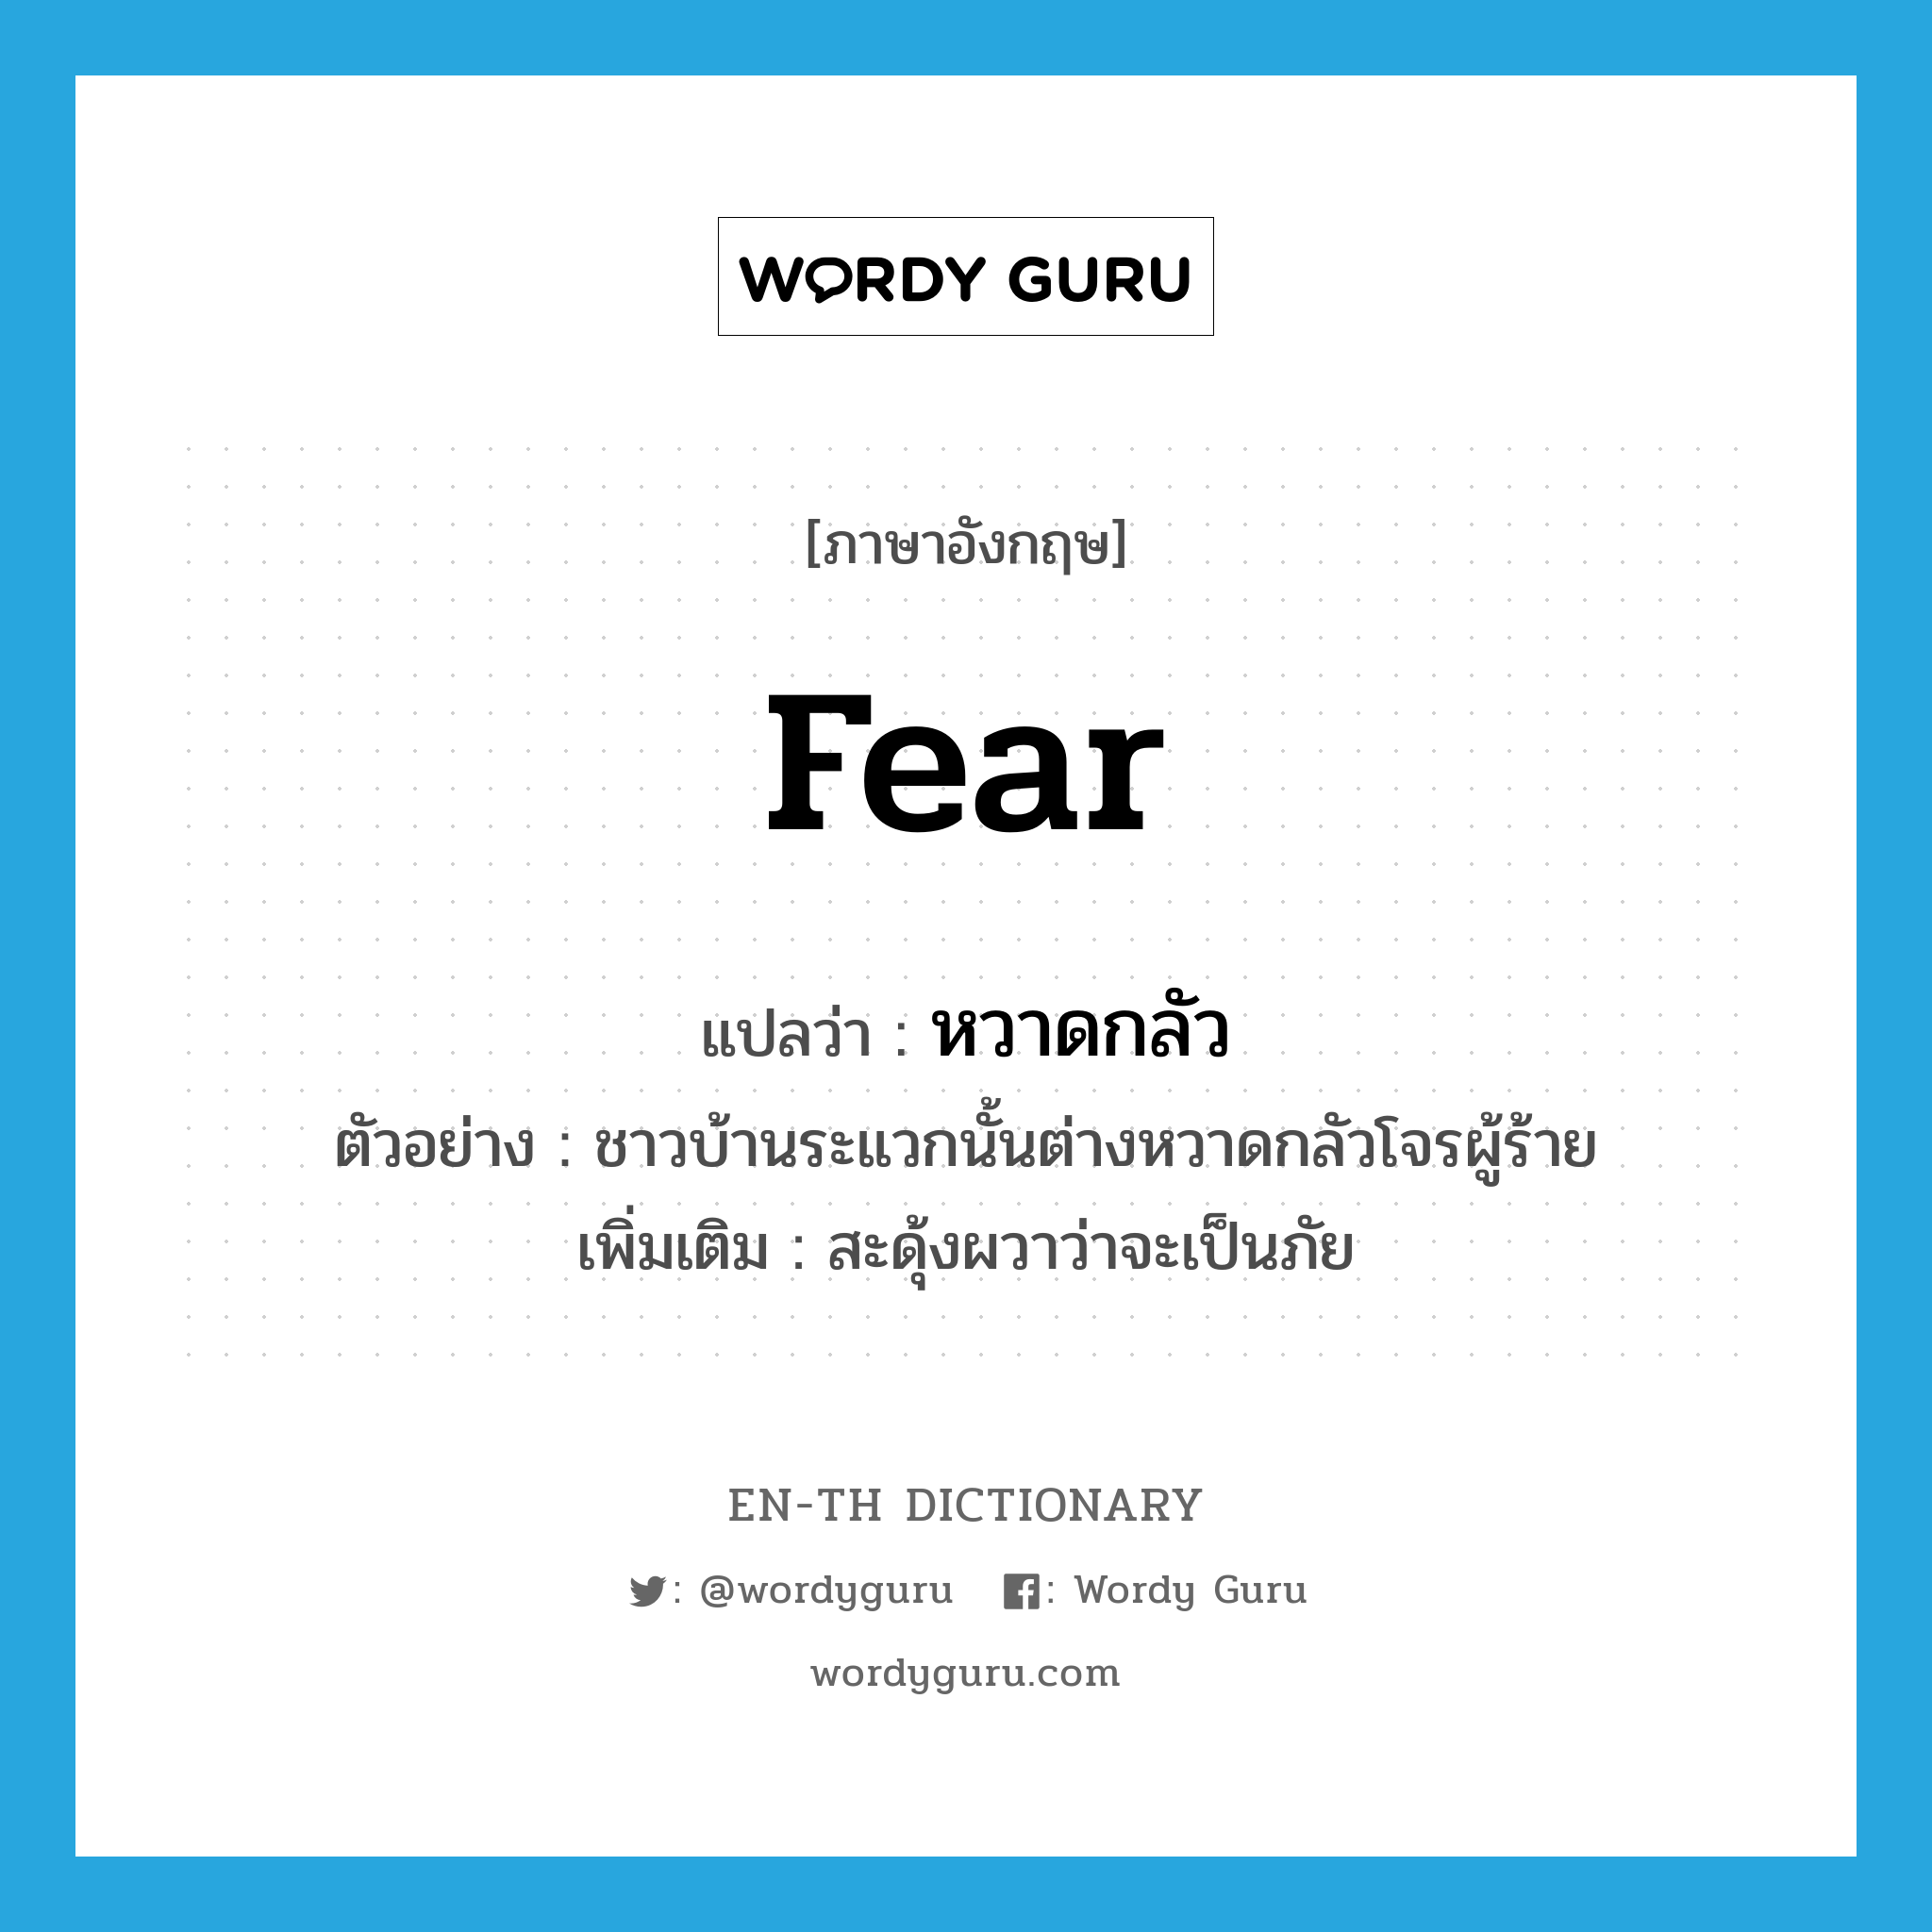 fear แปลว่า?, คำศัพท์ภาษาอังกฤษ fear แปลว่า หวาดกลัว ประเภท V ตัวอย่าง ชาวบ้านระแวกนั้นต่างหวาดกลัวโจรผู้ร้าย เพิ่มเติม สะดุ้งผวาว่าจะเป็นภัย หมวด V